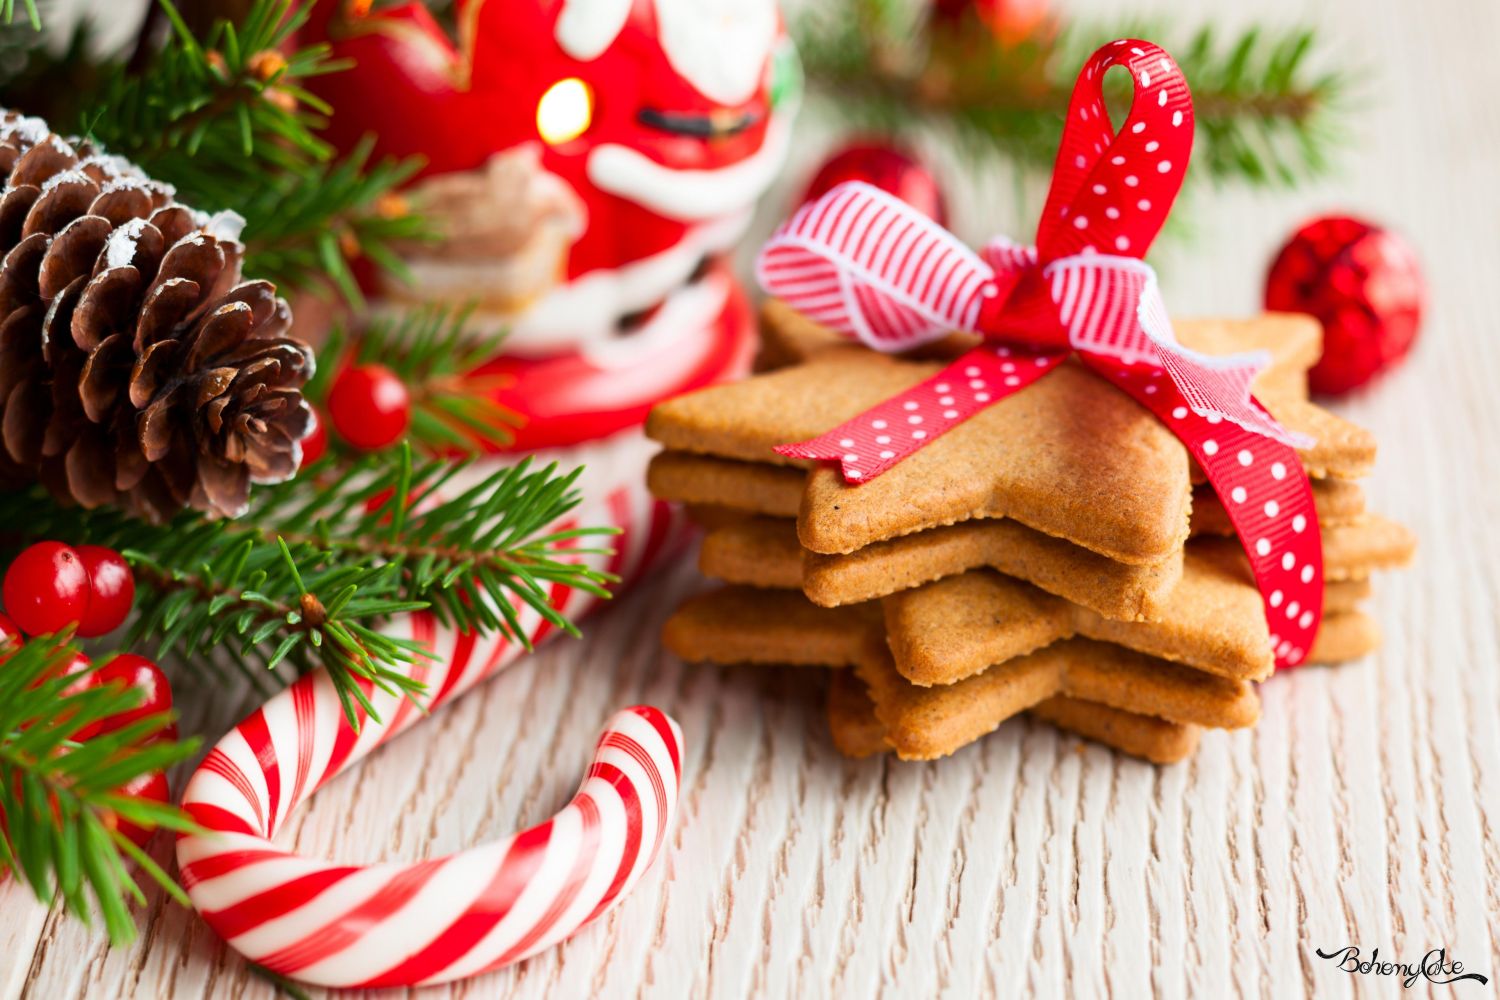 Regalare A Natale.Le Migliori Ricette Di Biscotti Da Regalare A Natale Bohemycake